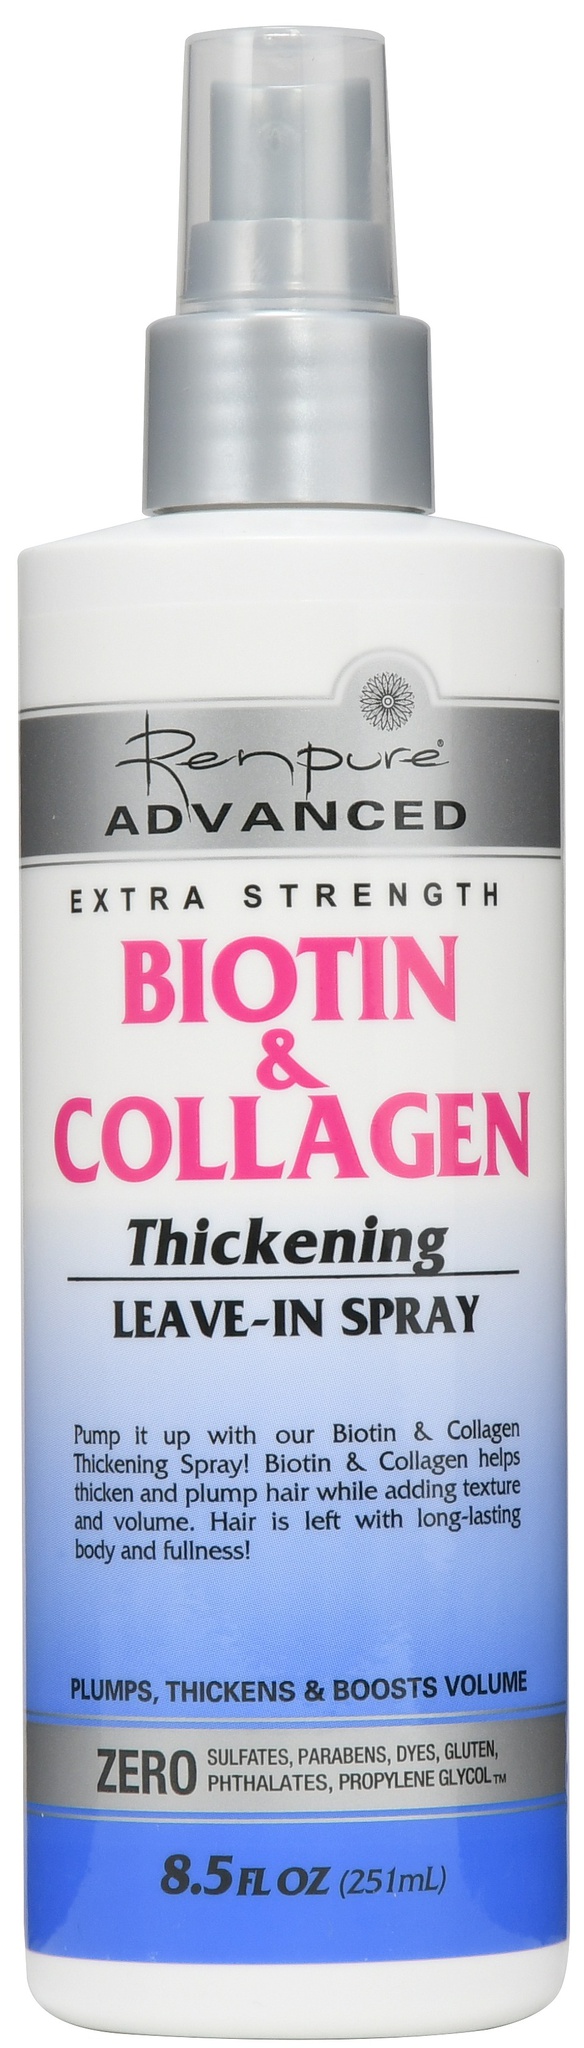 RENPURE advanced Biotin & Collagen Thickening Leave In Spray